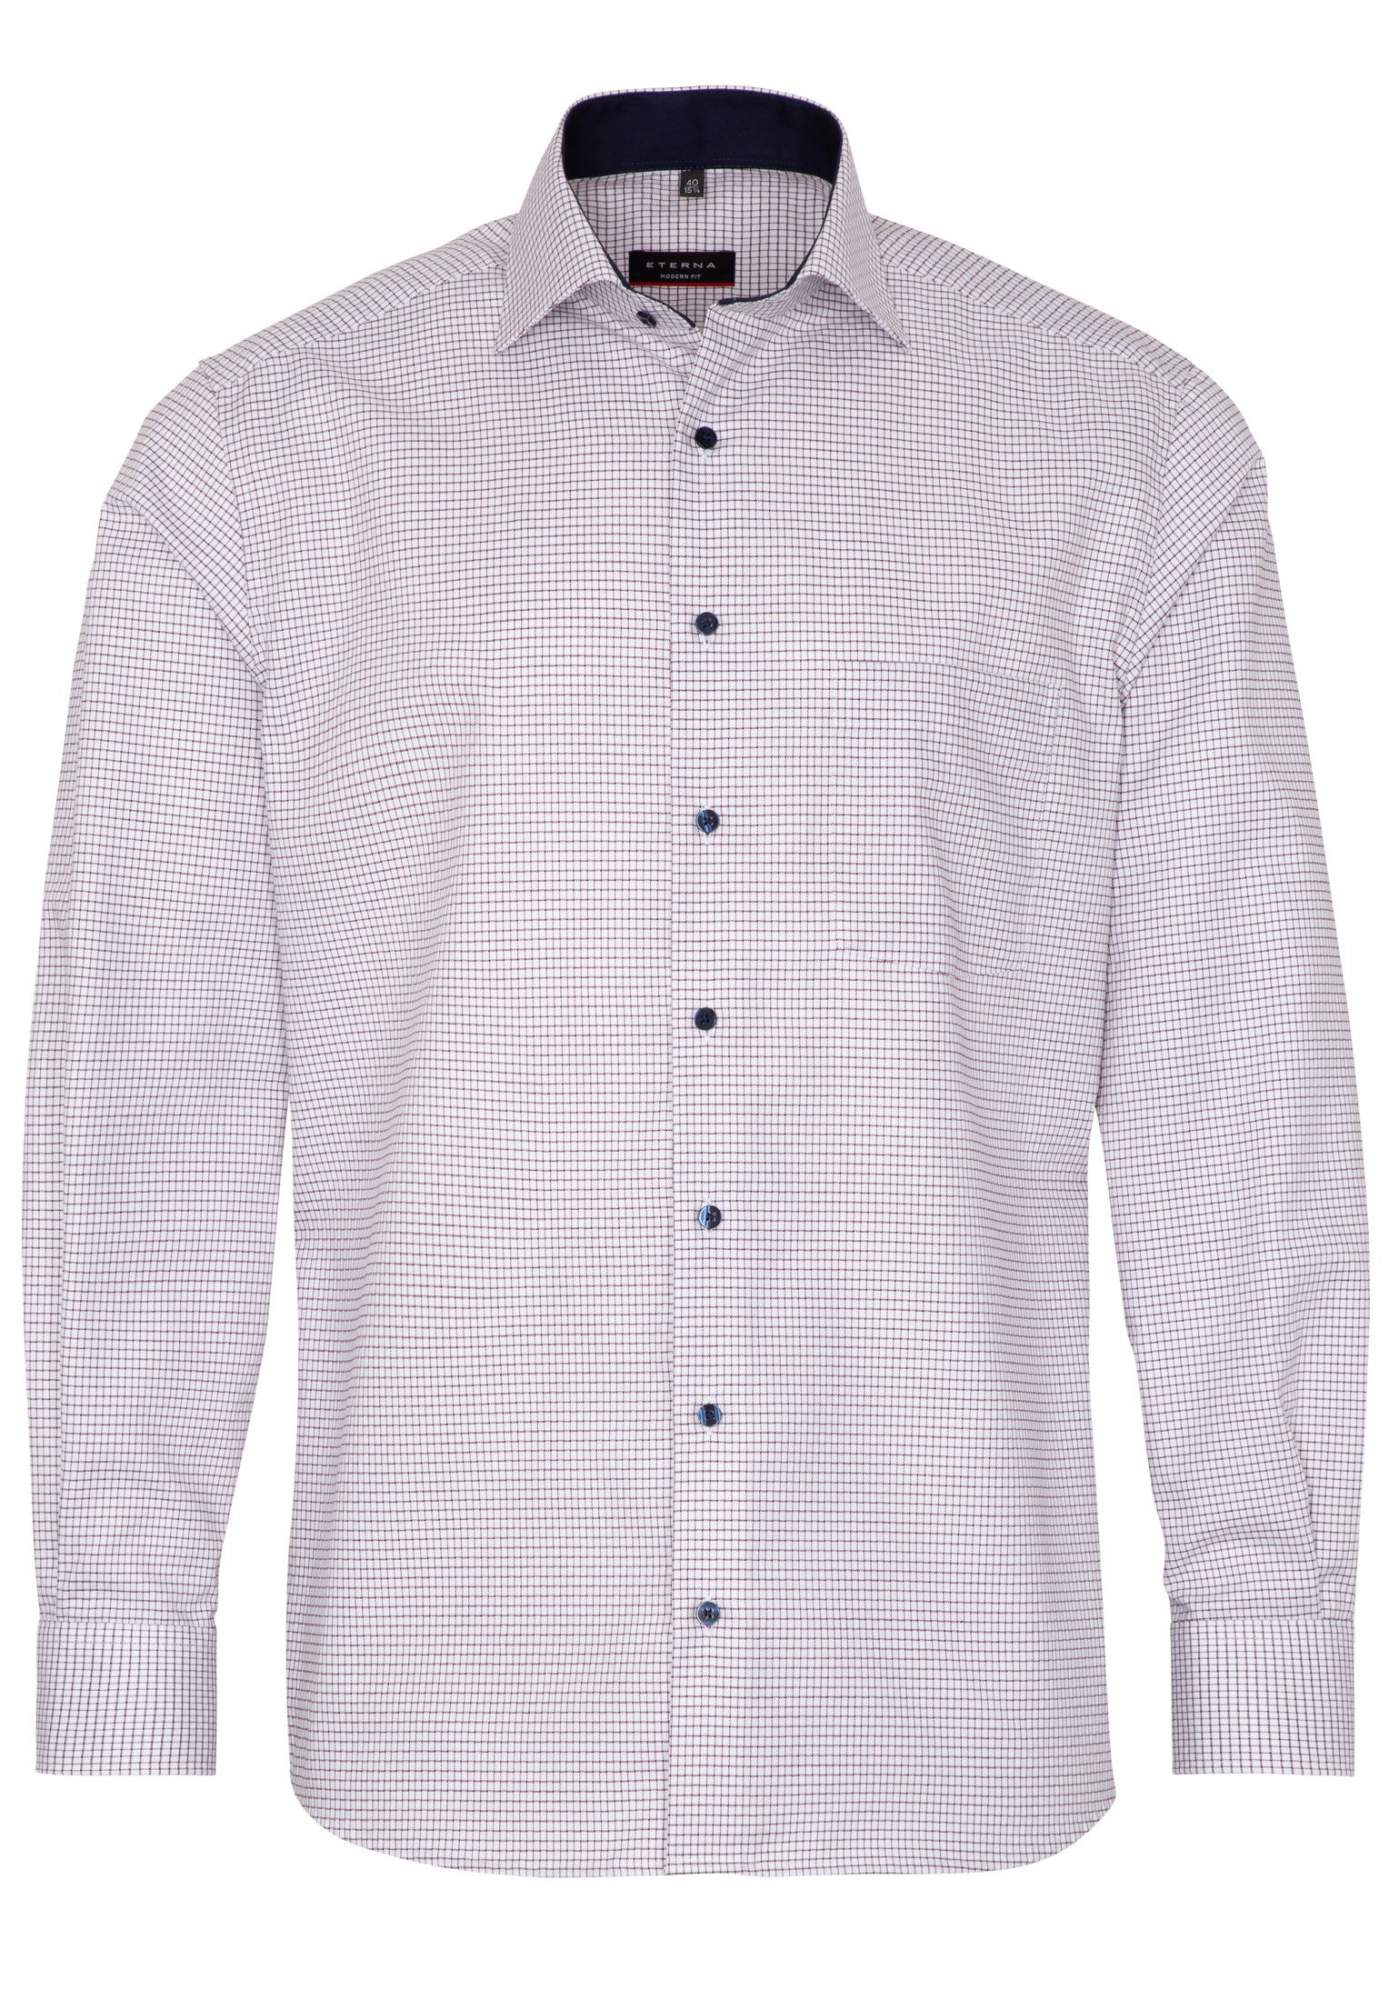 Рубашка мужская ETERNA 3886-57-X15K белая 41 - купить в Икона Стиля, цена на Мегамаркет